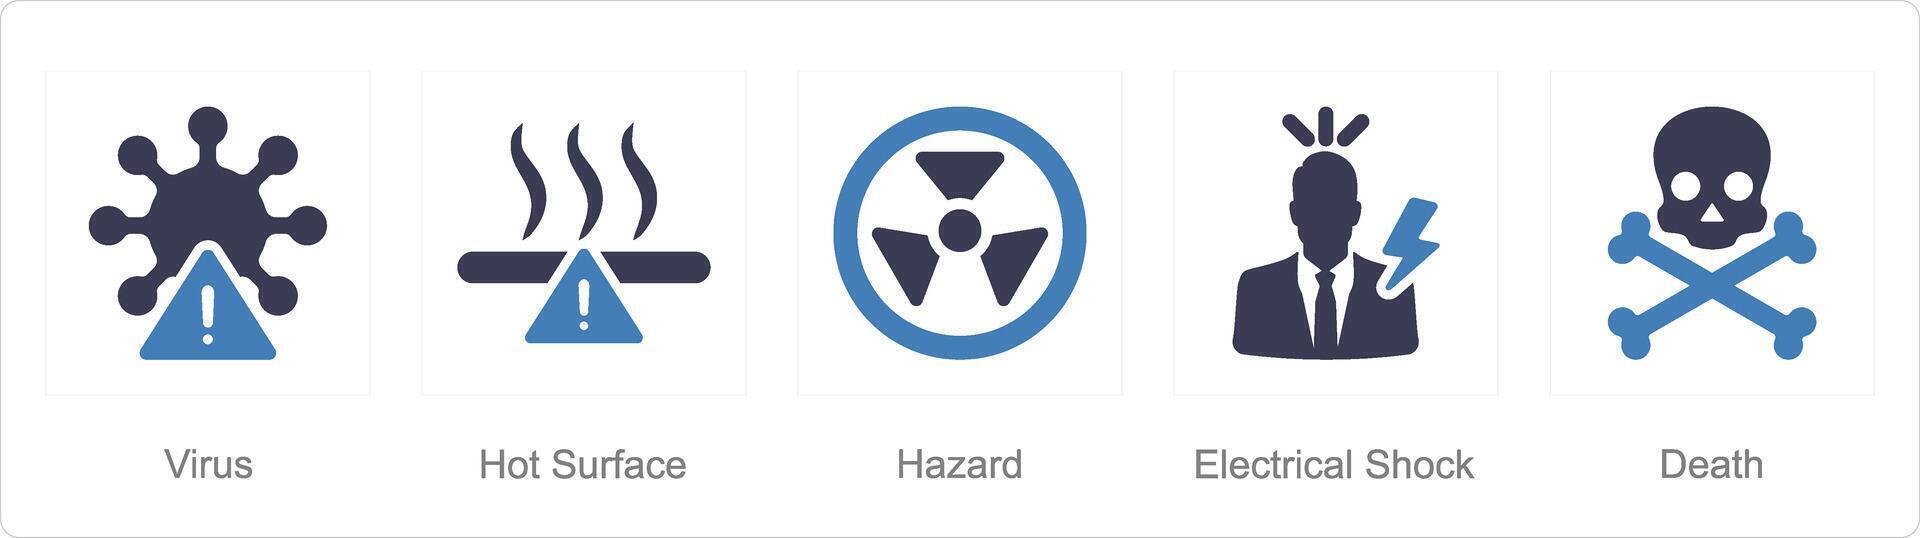 un' impostato di 5 rischio Pericolo icone come virus, caldo superficie, rischio vettore